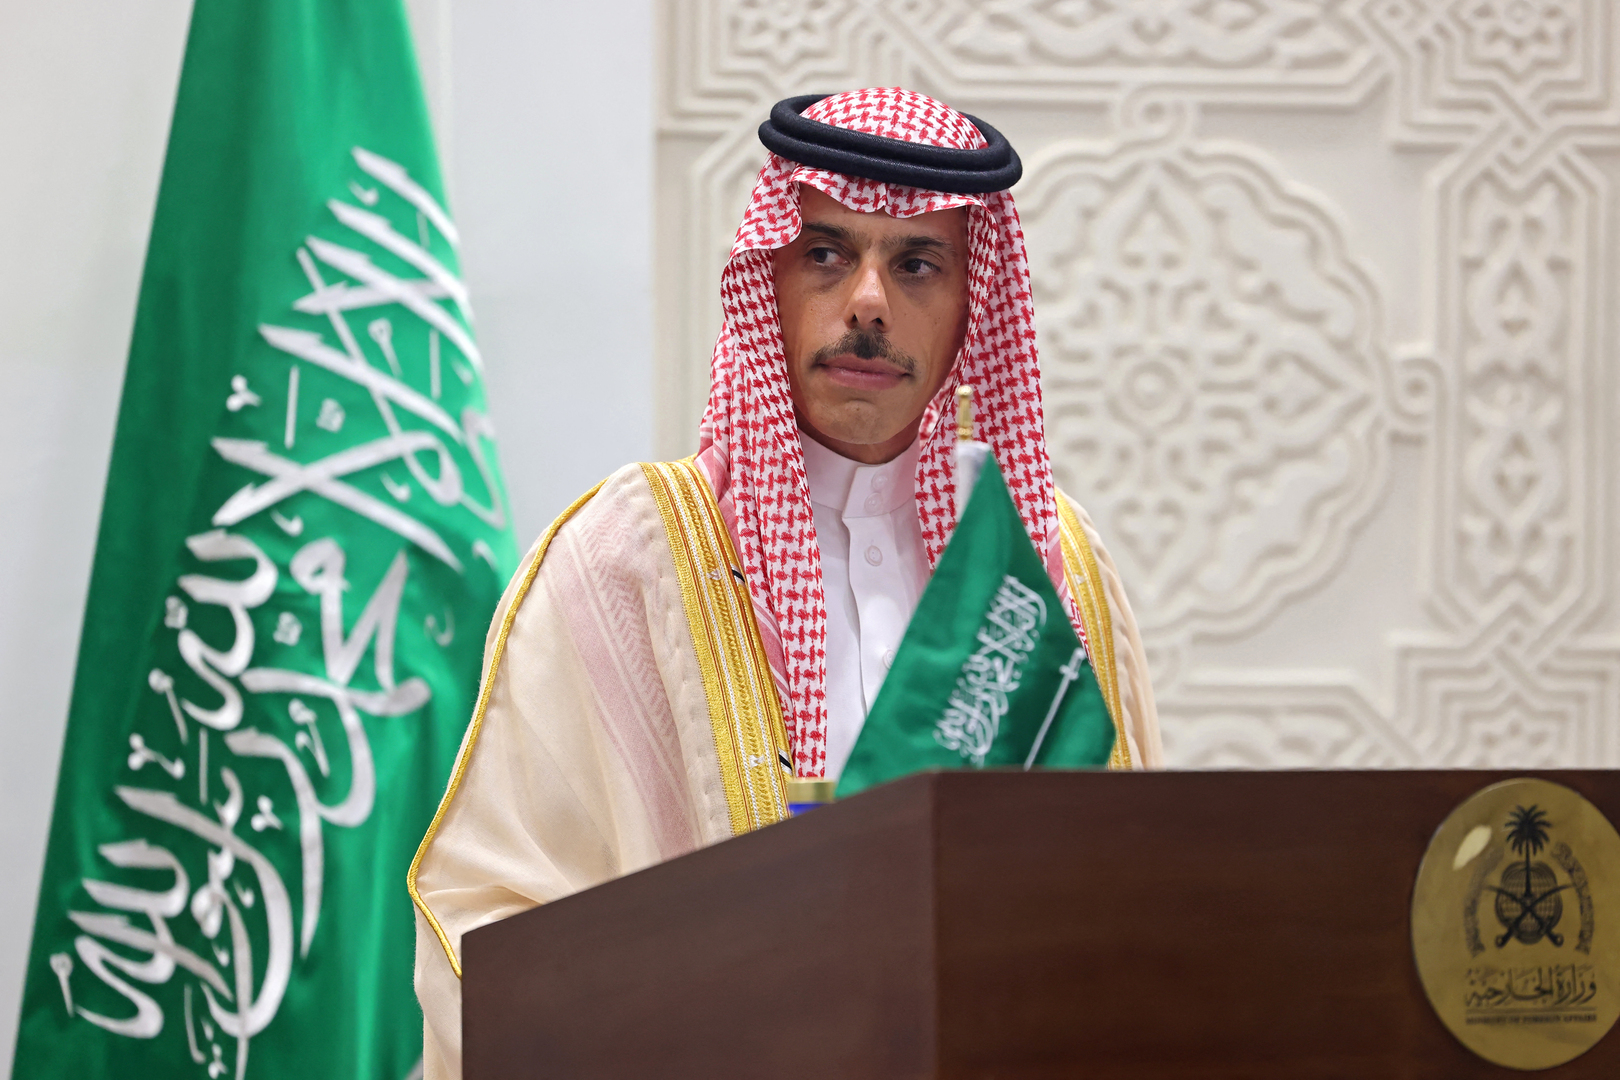 وزير الخارجية الأردني يعلق على إمكانية عقد اتفاق لتطبيع العلاقات سعودي إسرائيلي